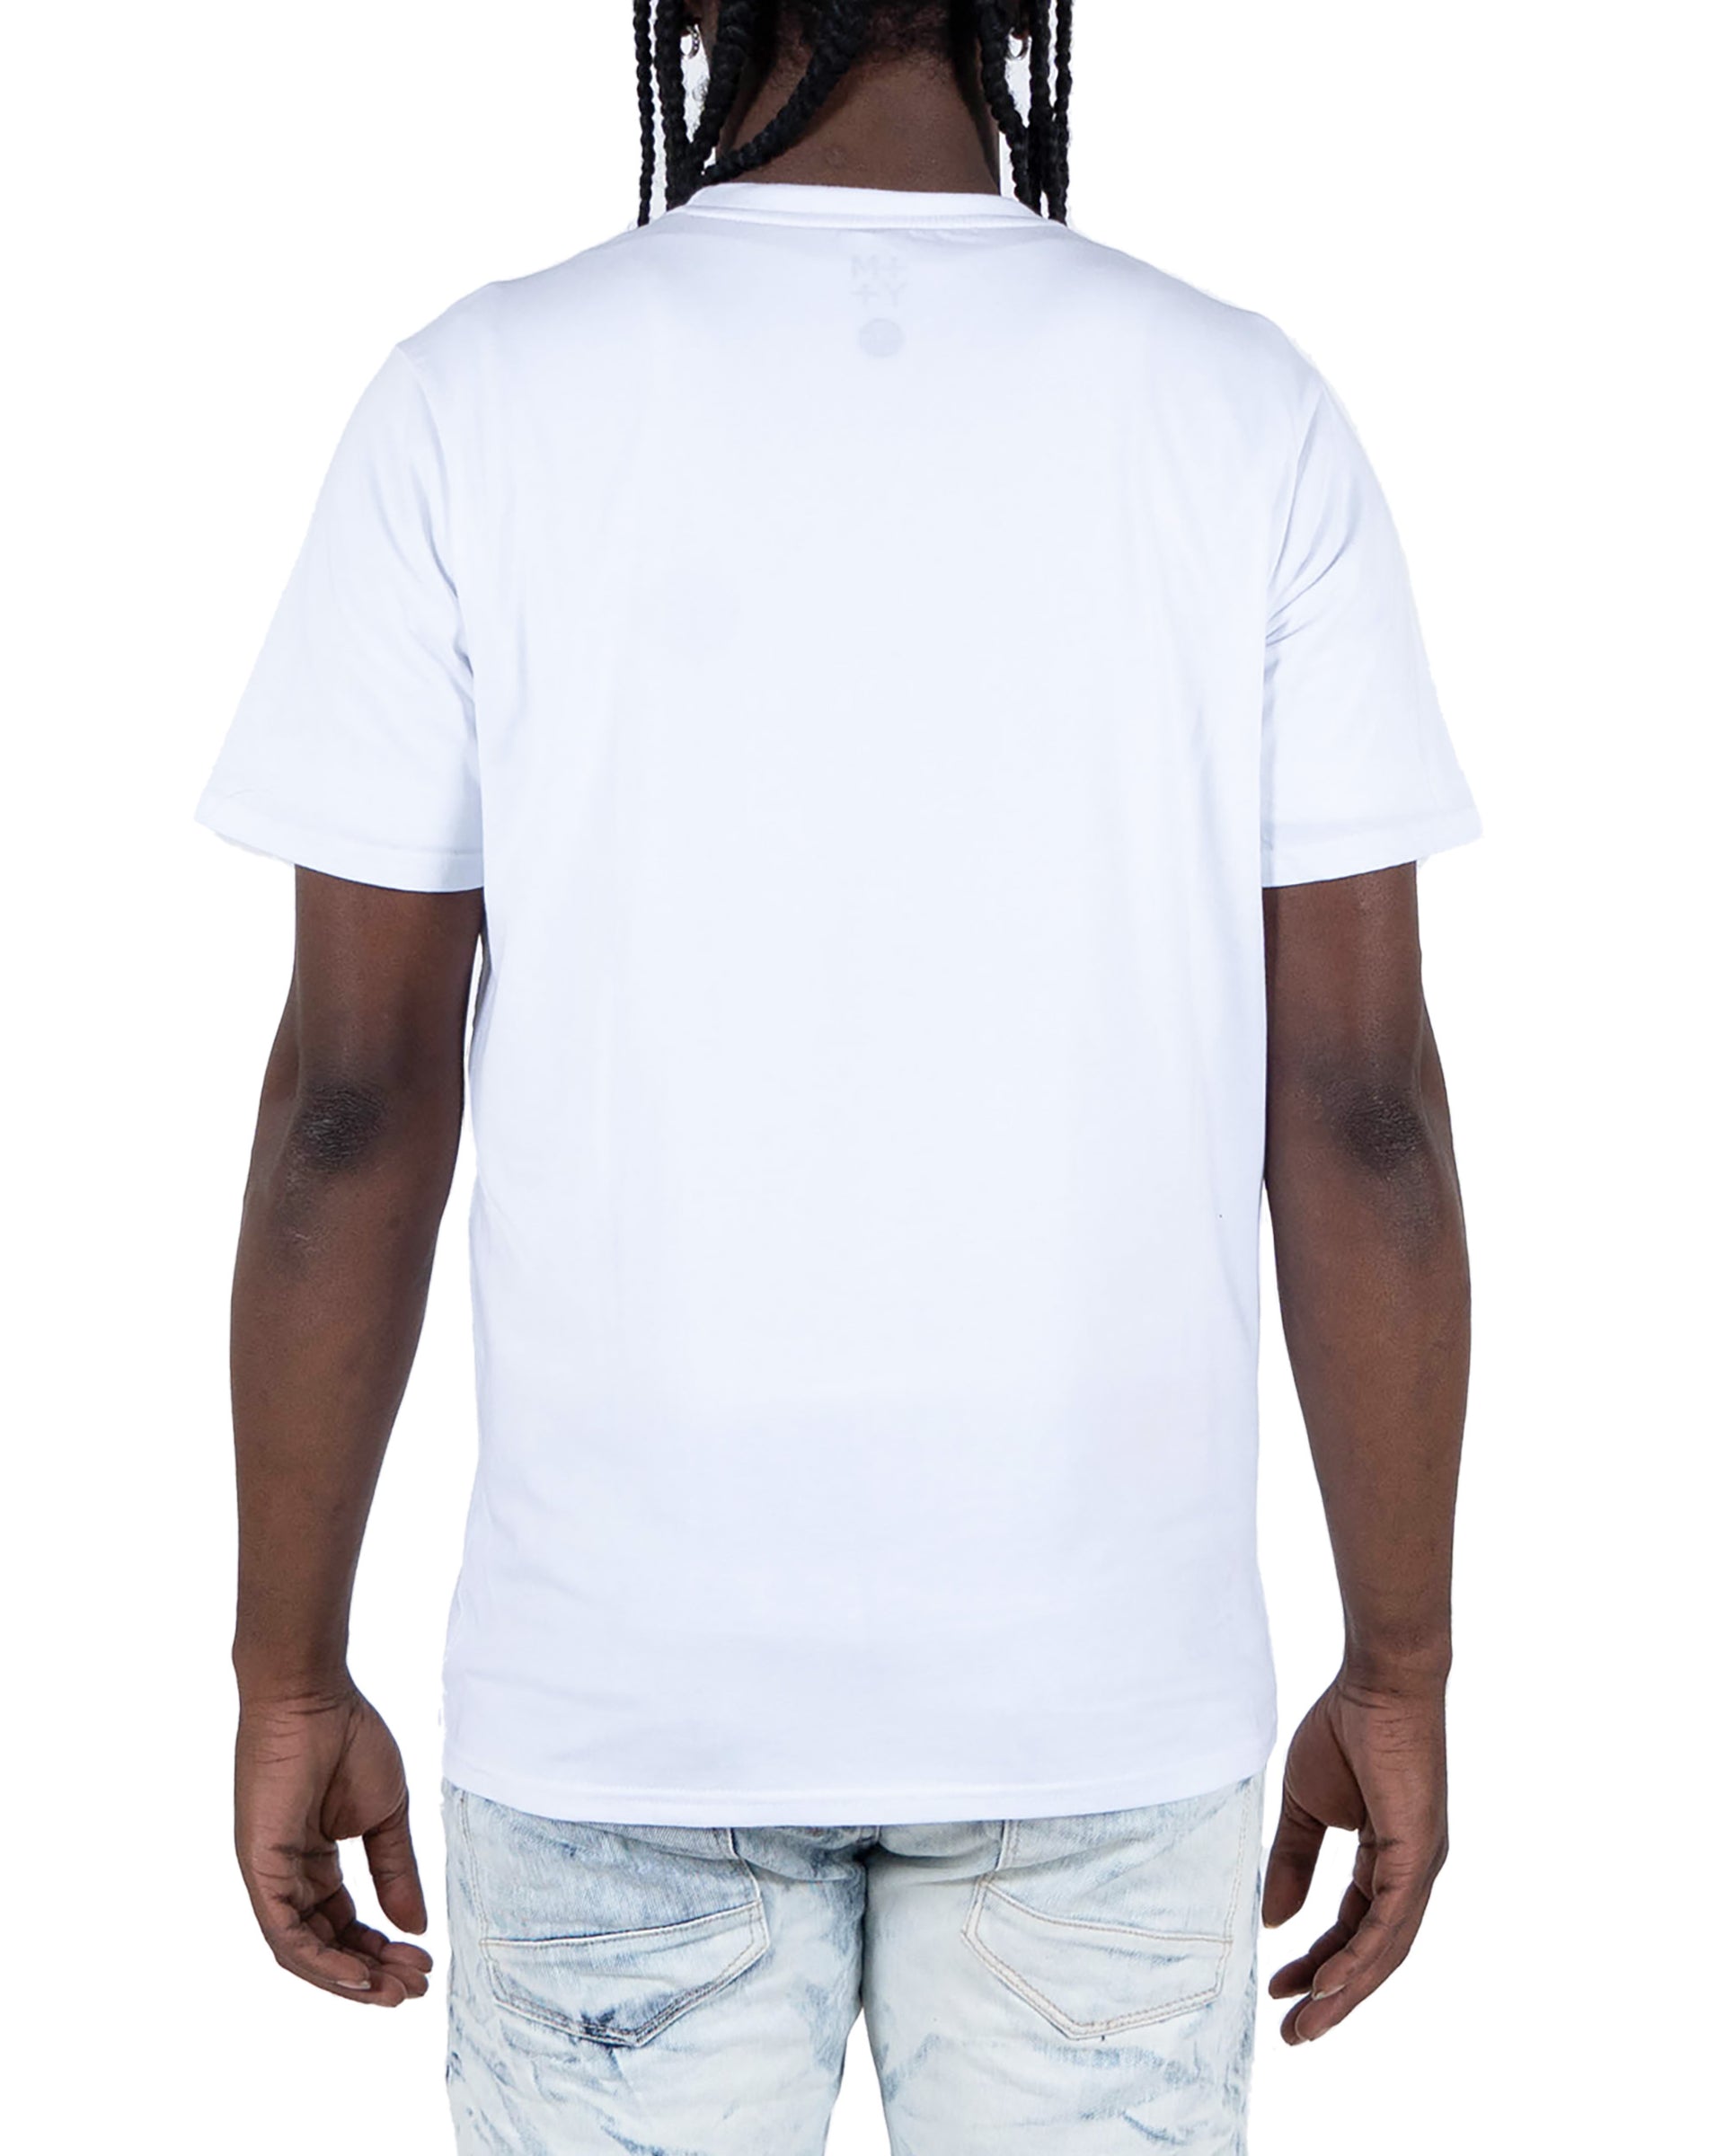 Men's "Relentless" Graphic T-Shirt | White